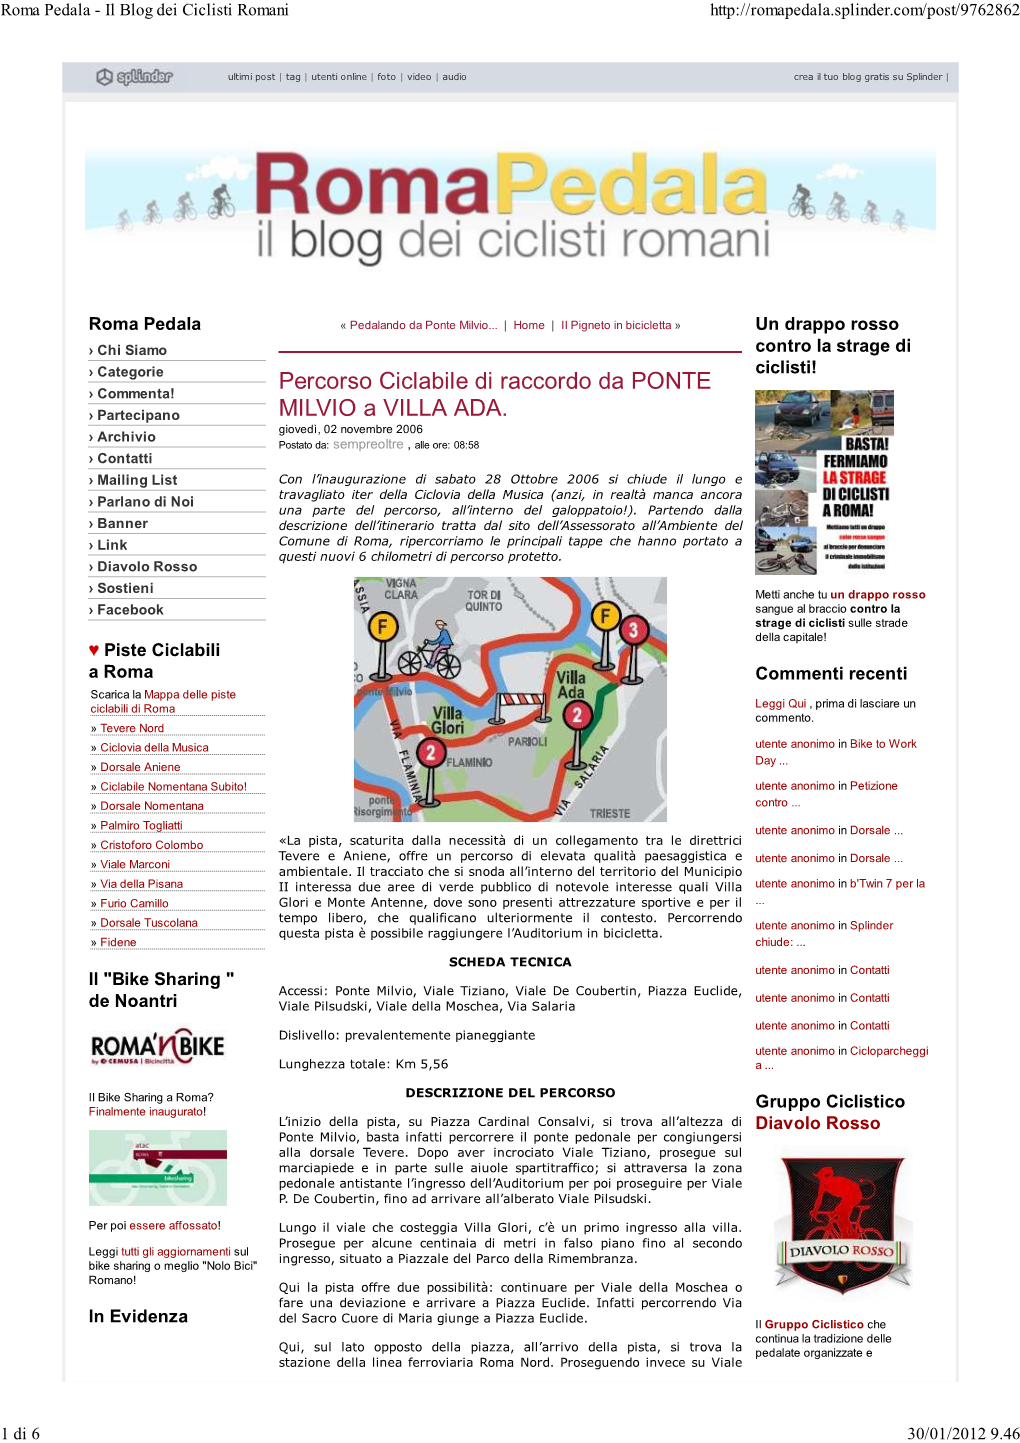 Roma Pedala - Il Blog Dei Ciclisti Romani